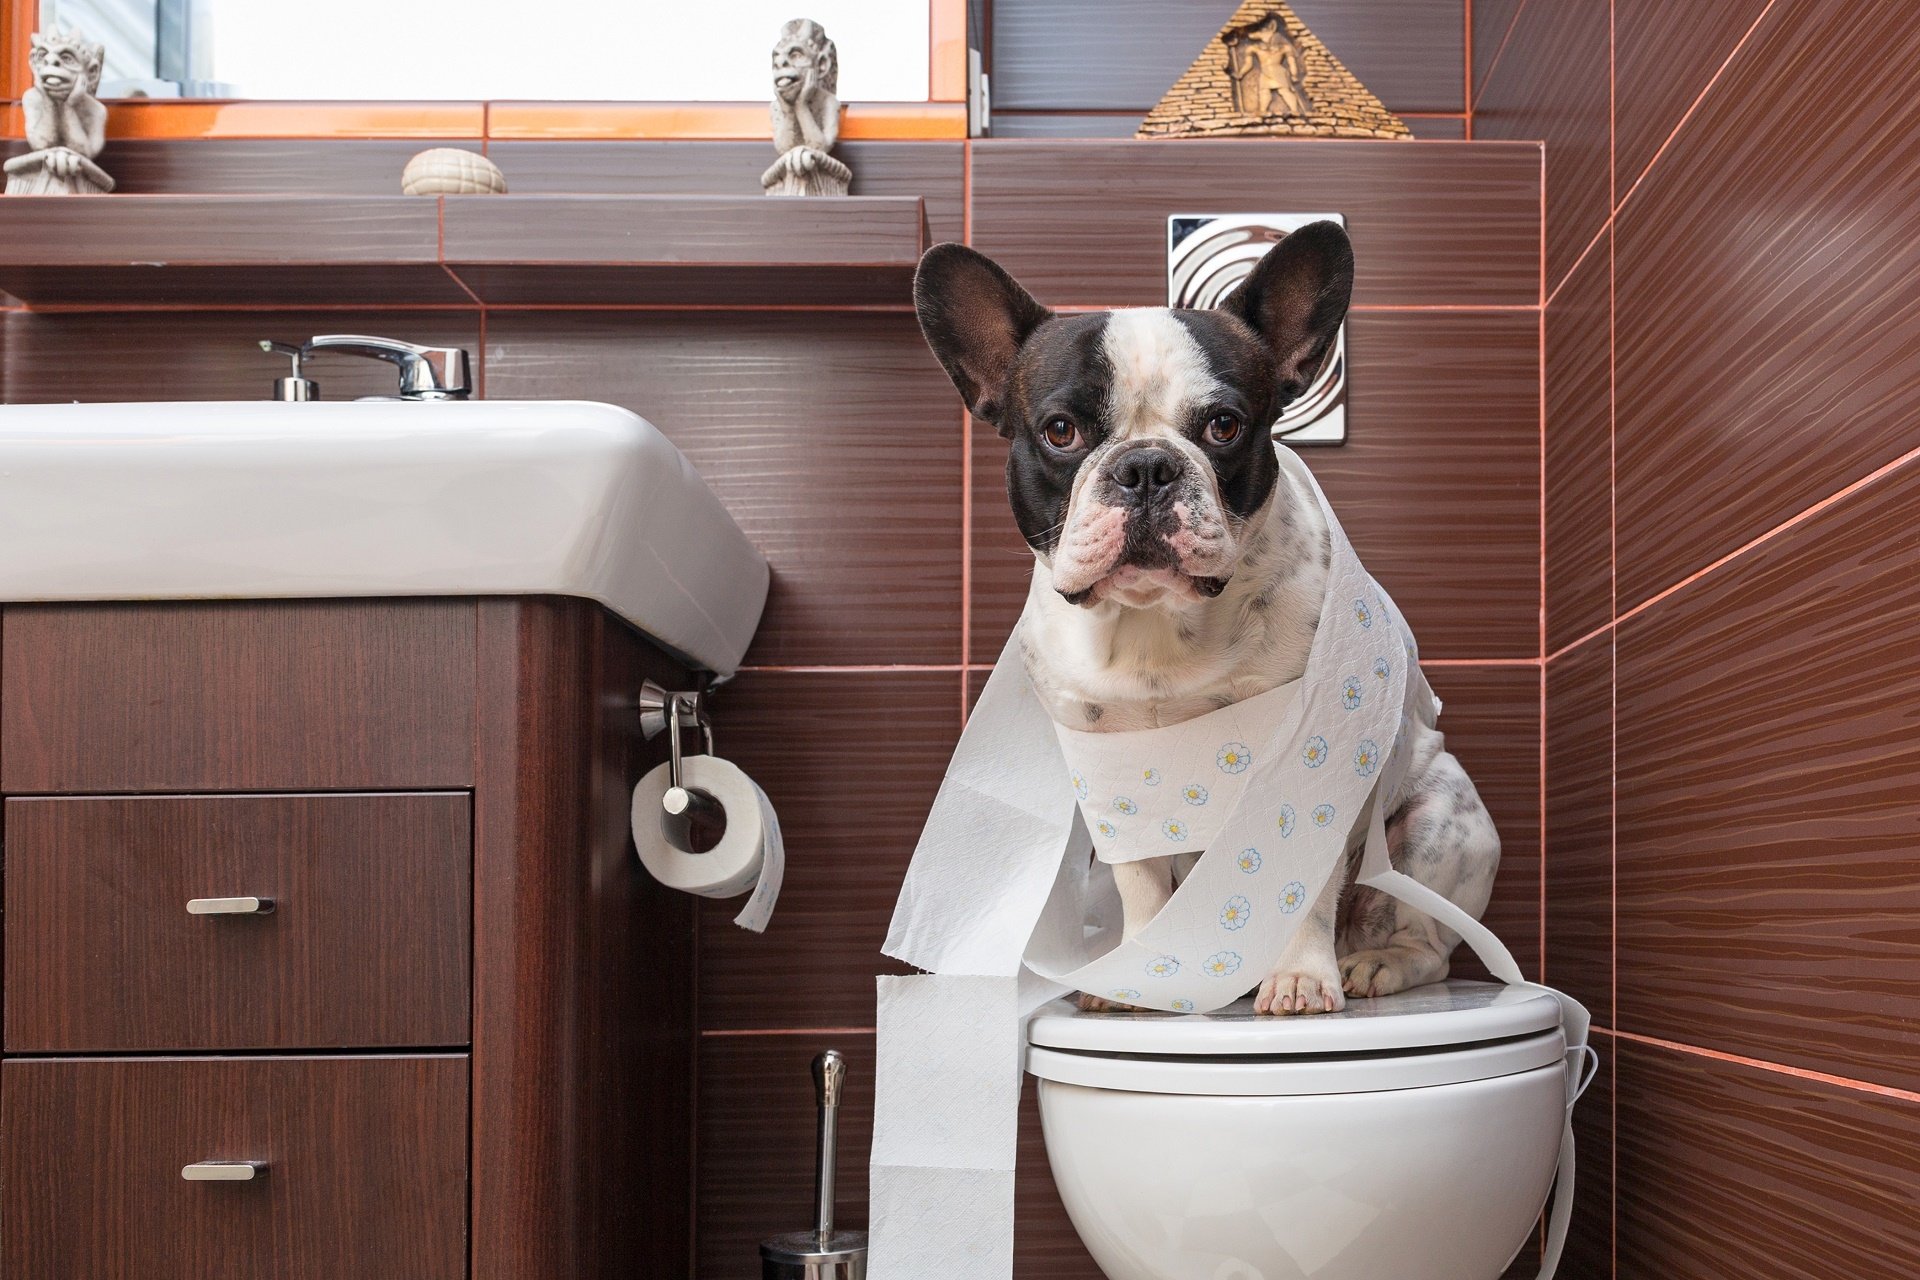 klozet üzerinde tuvalet kağıdına sarılmış köpek